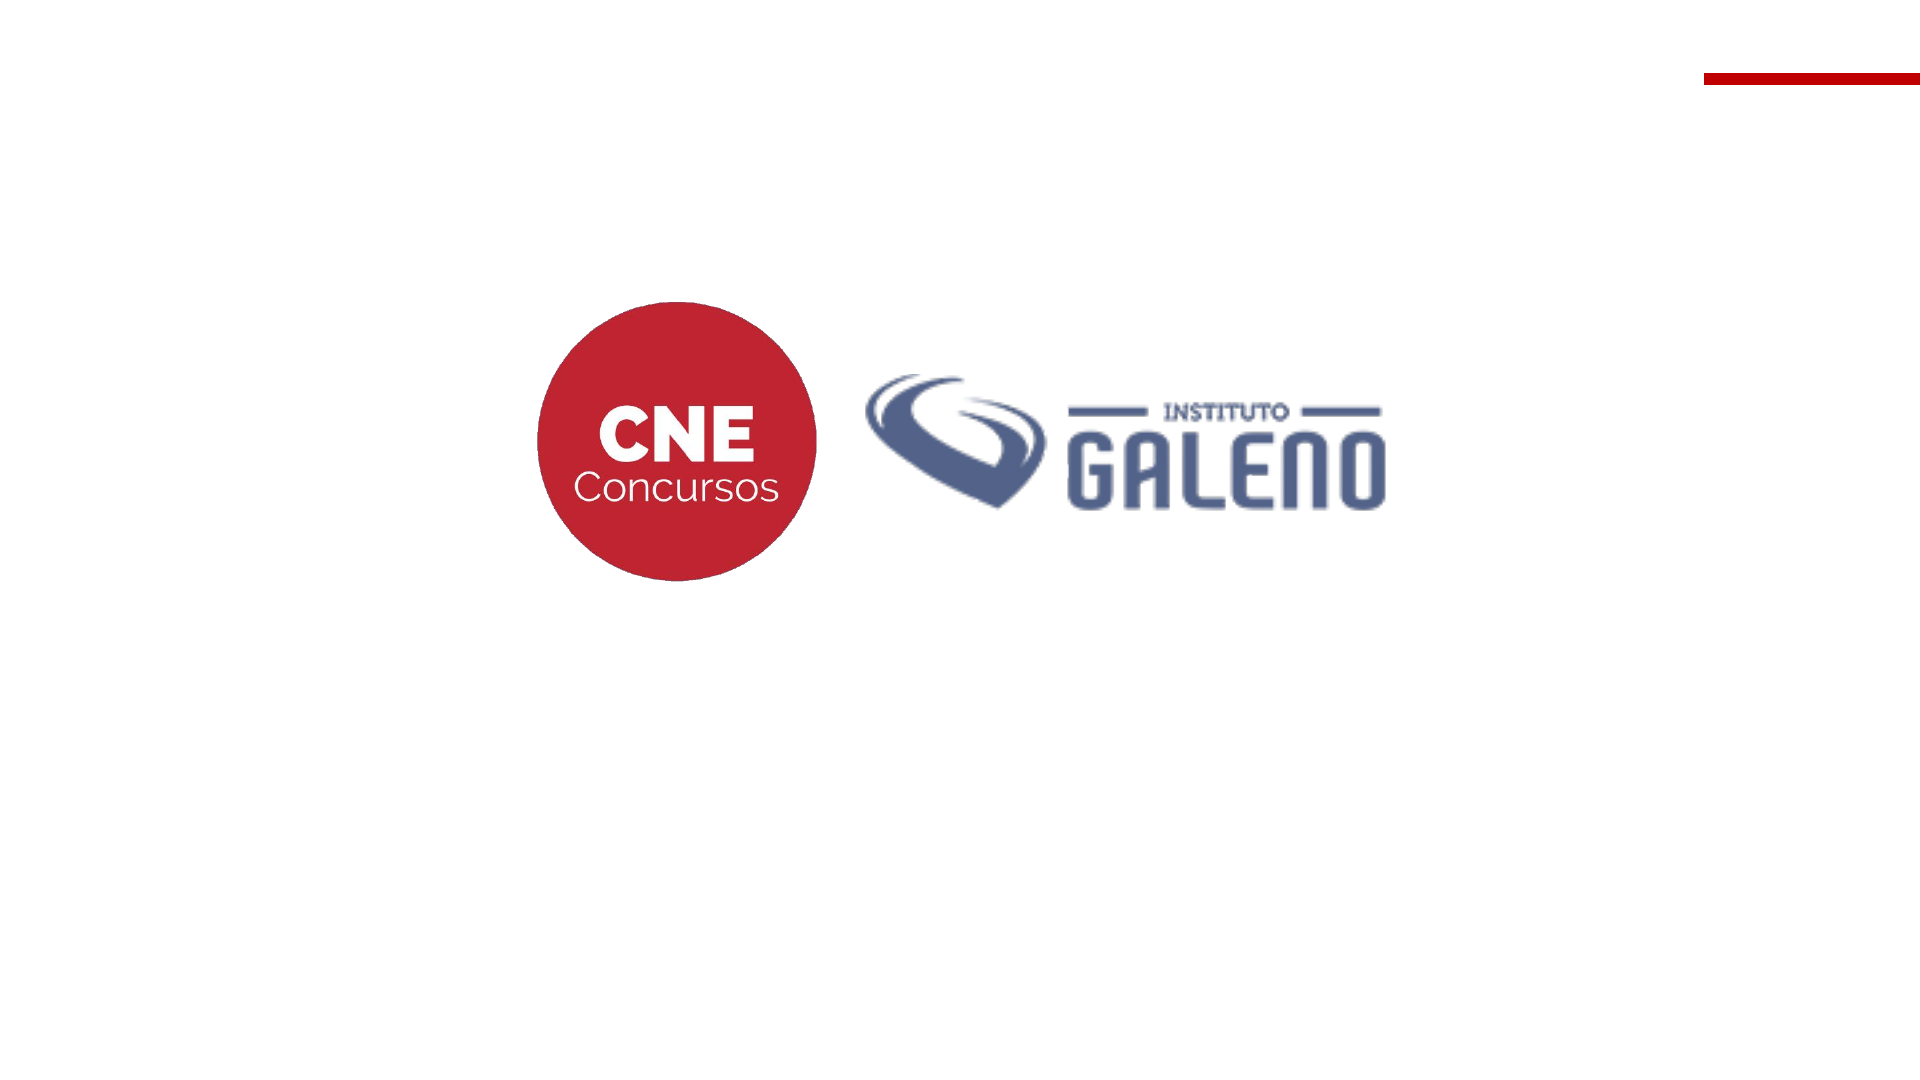 Instituto Galeno :: Preparatório para Concursos